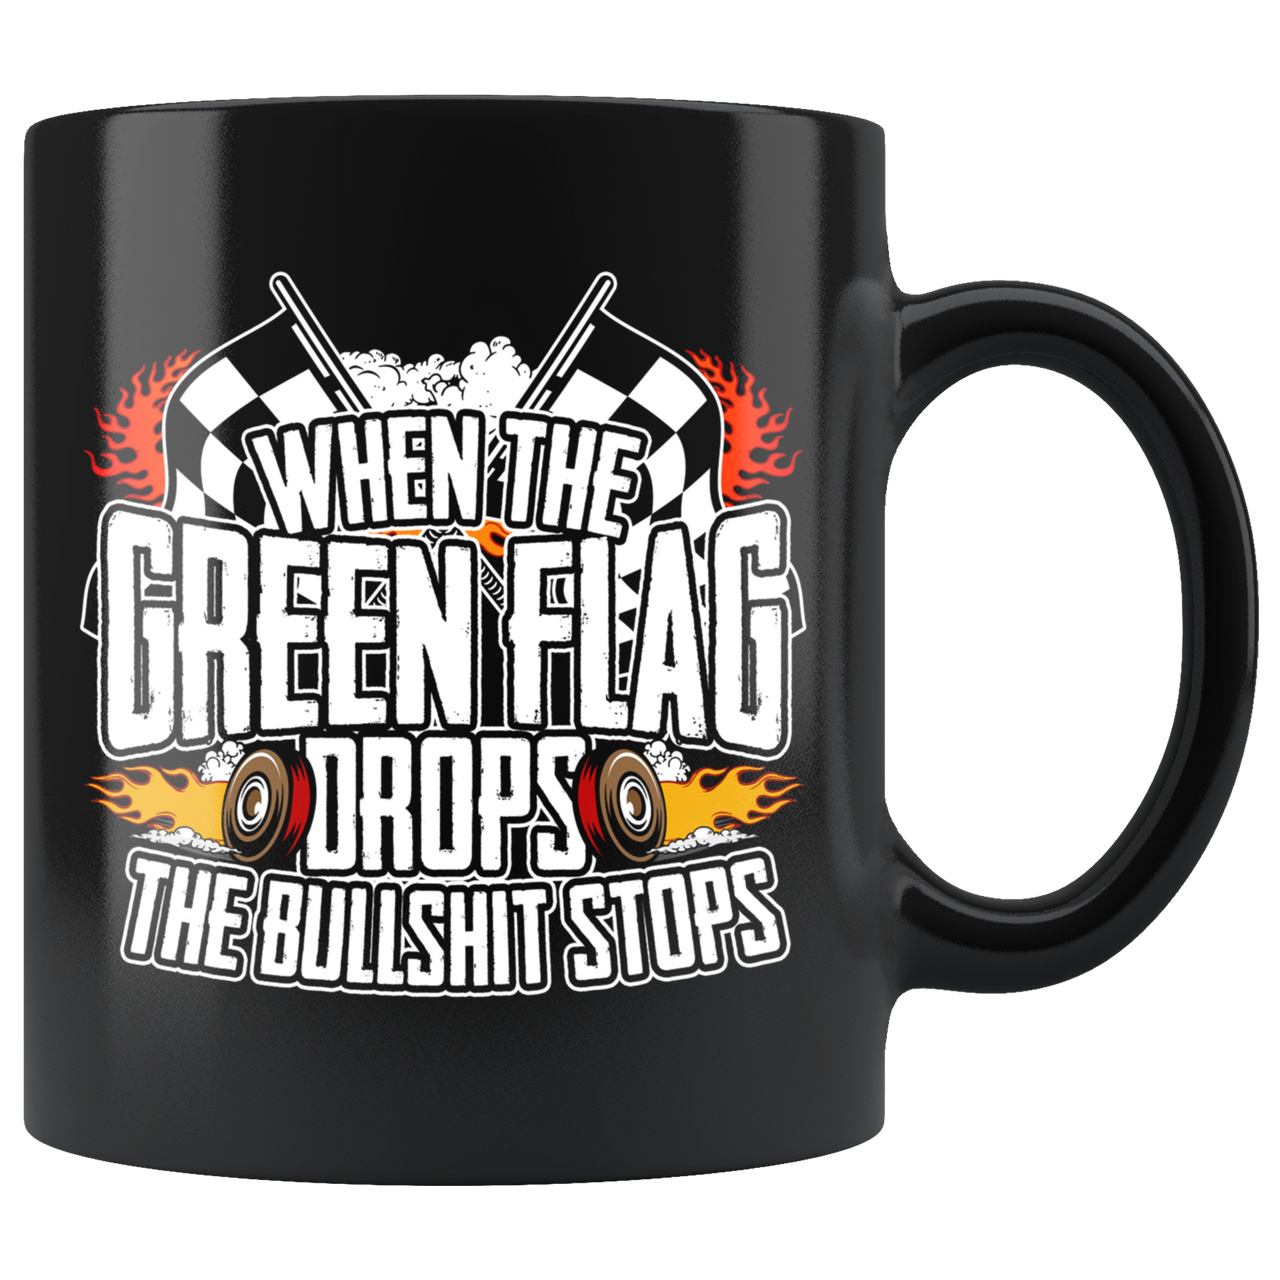 When The Green Flag Drops The Bullshit Ends Mug!